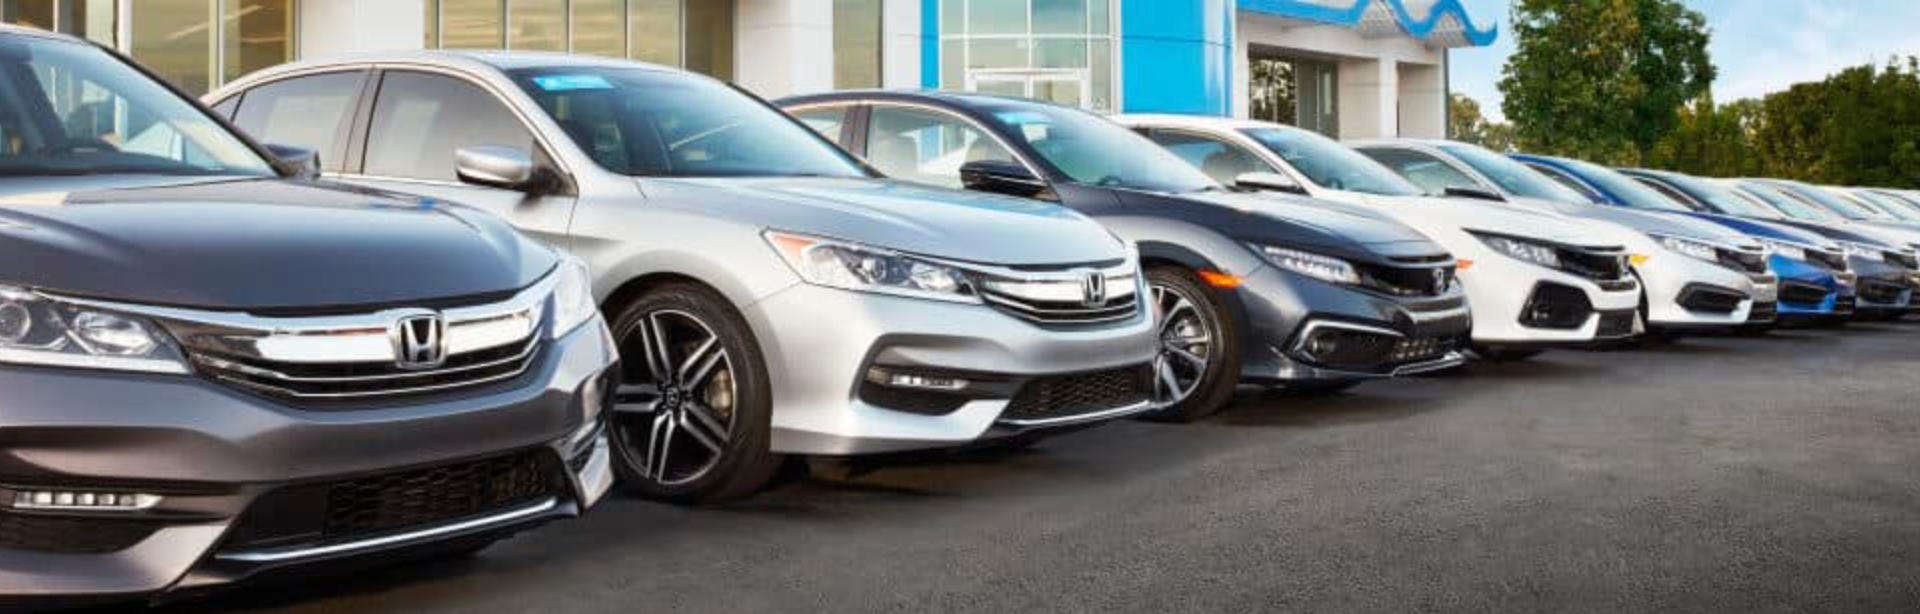 Do Hondas Have Good Resale Value?